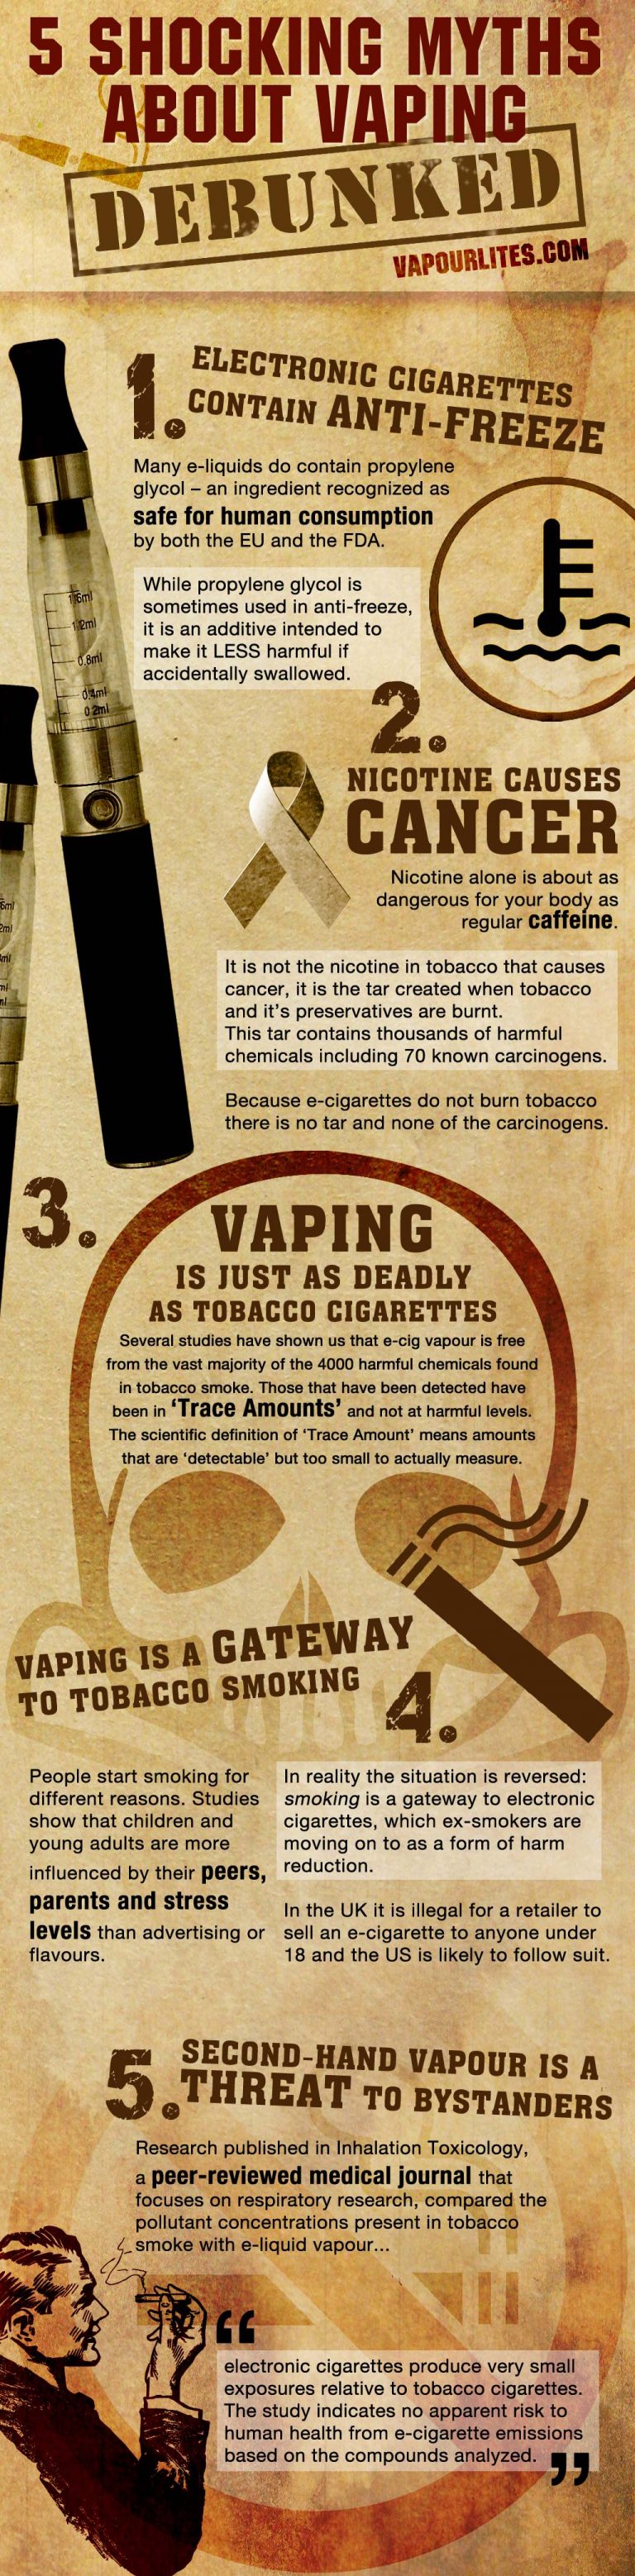 3 Reasons to Quit Smoking Using Vapor